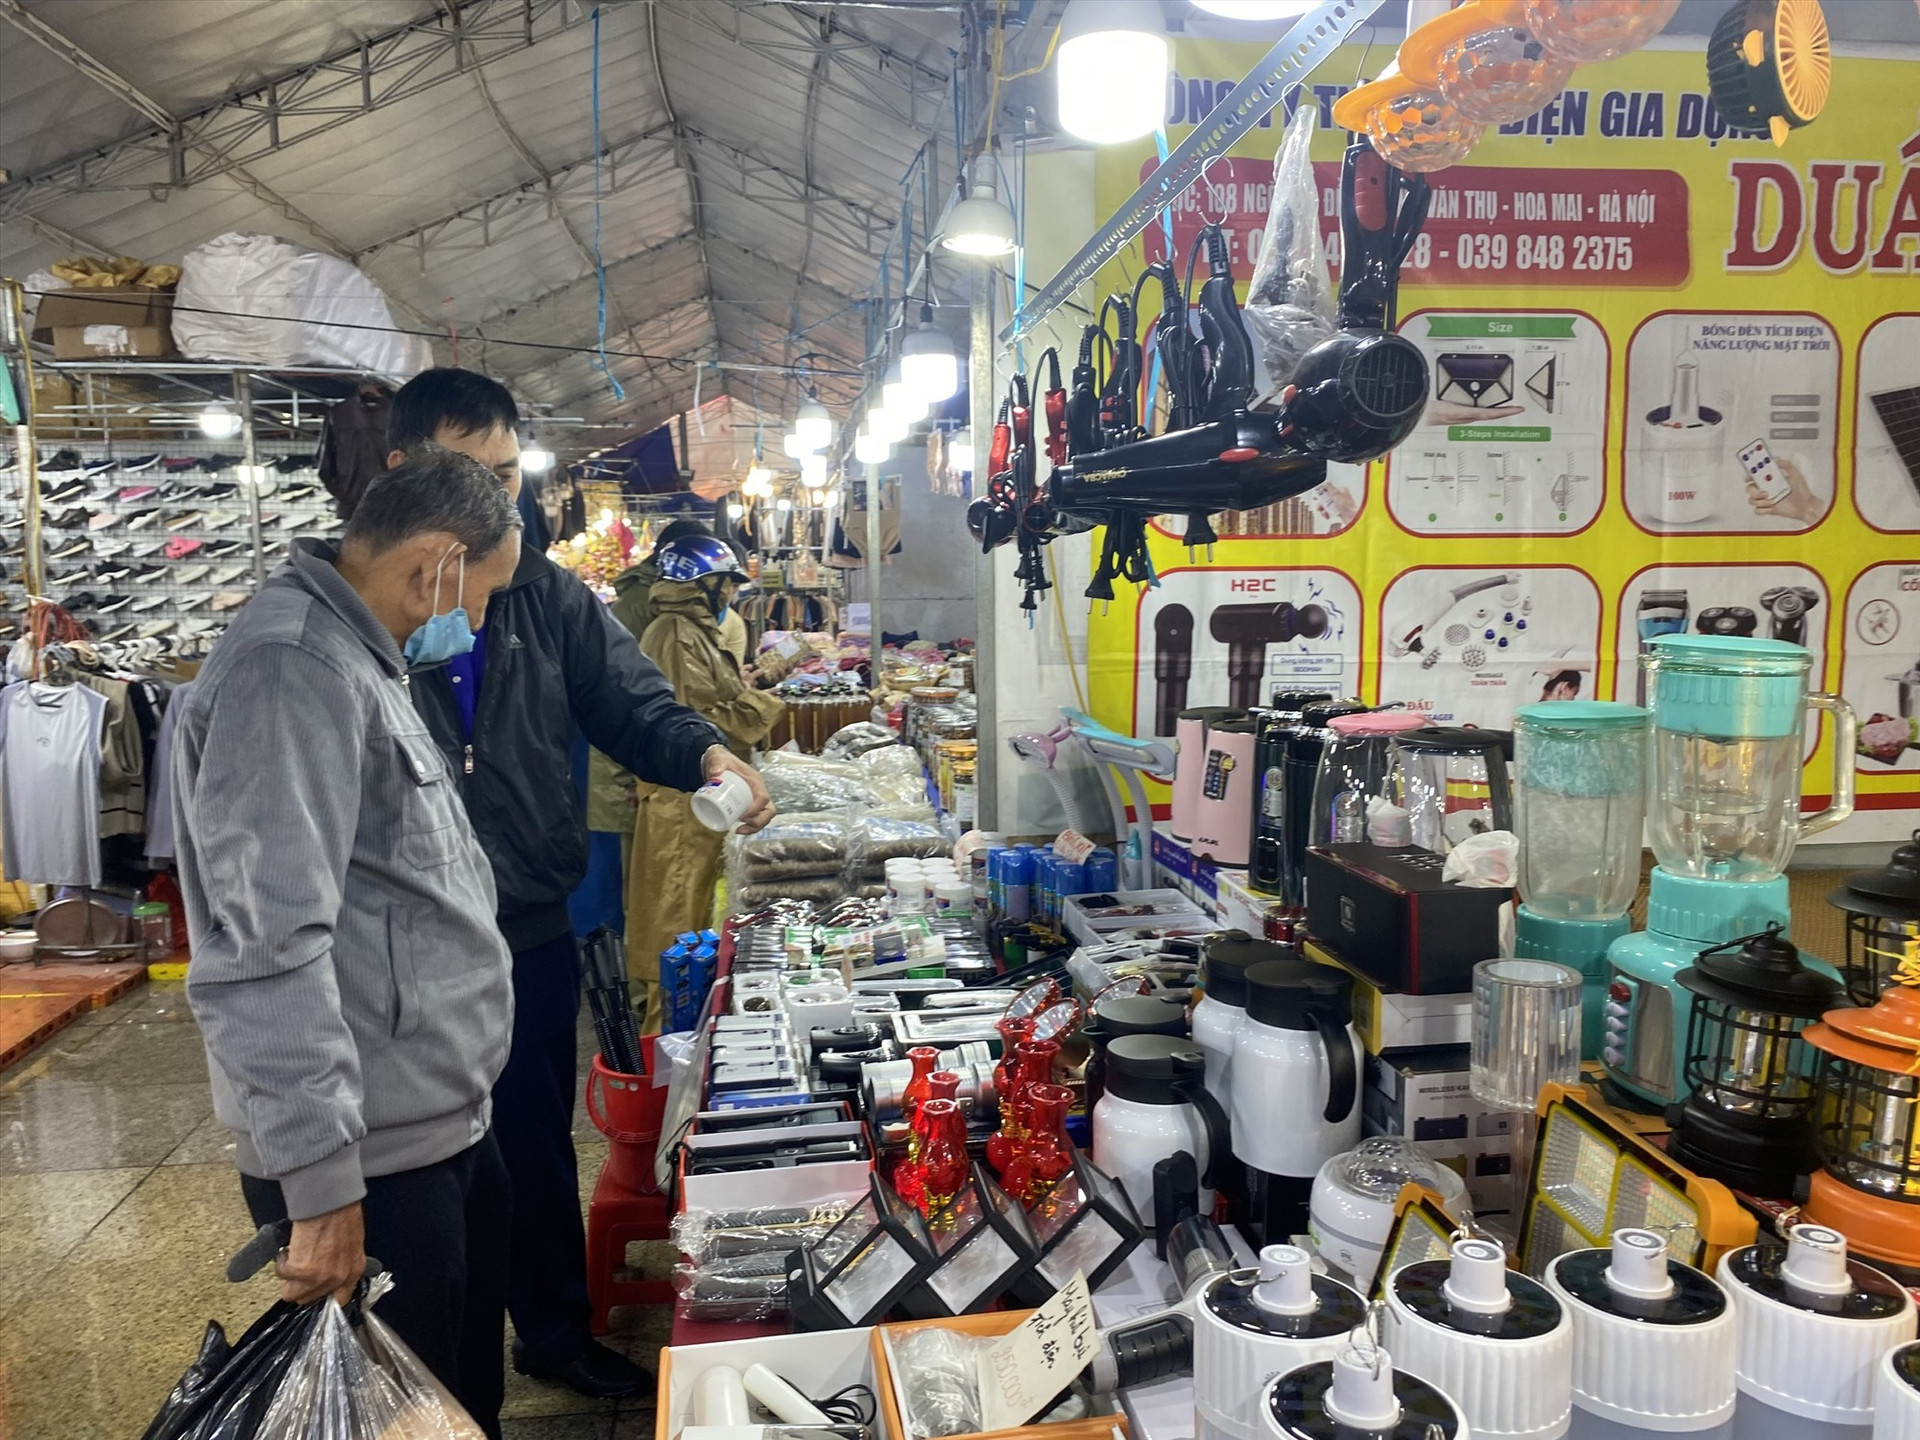 Nhiều sản phẩm hàng Việt được bày bán  tại Hôi chợ với giá khuyến mãi sâu. Ảnh: V.L